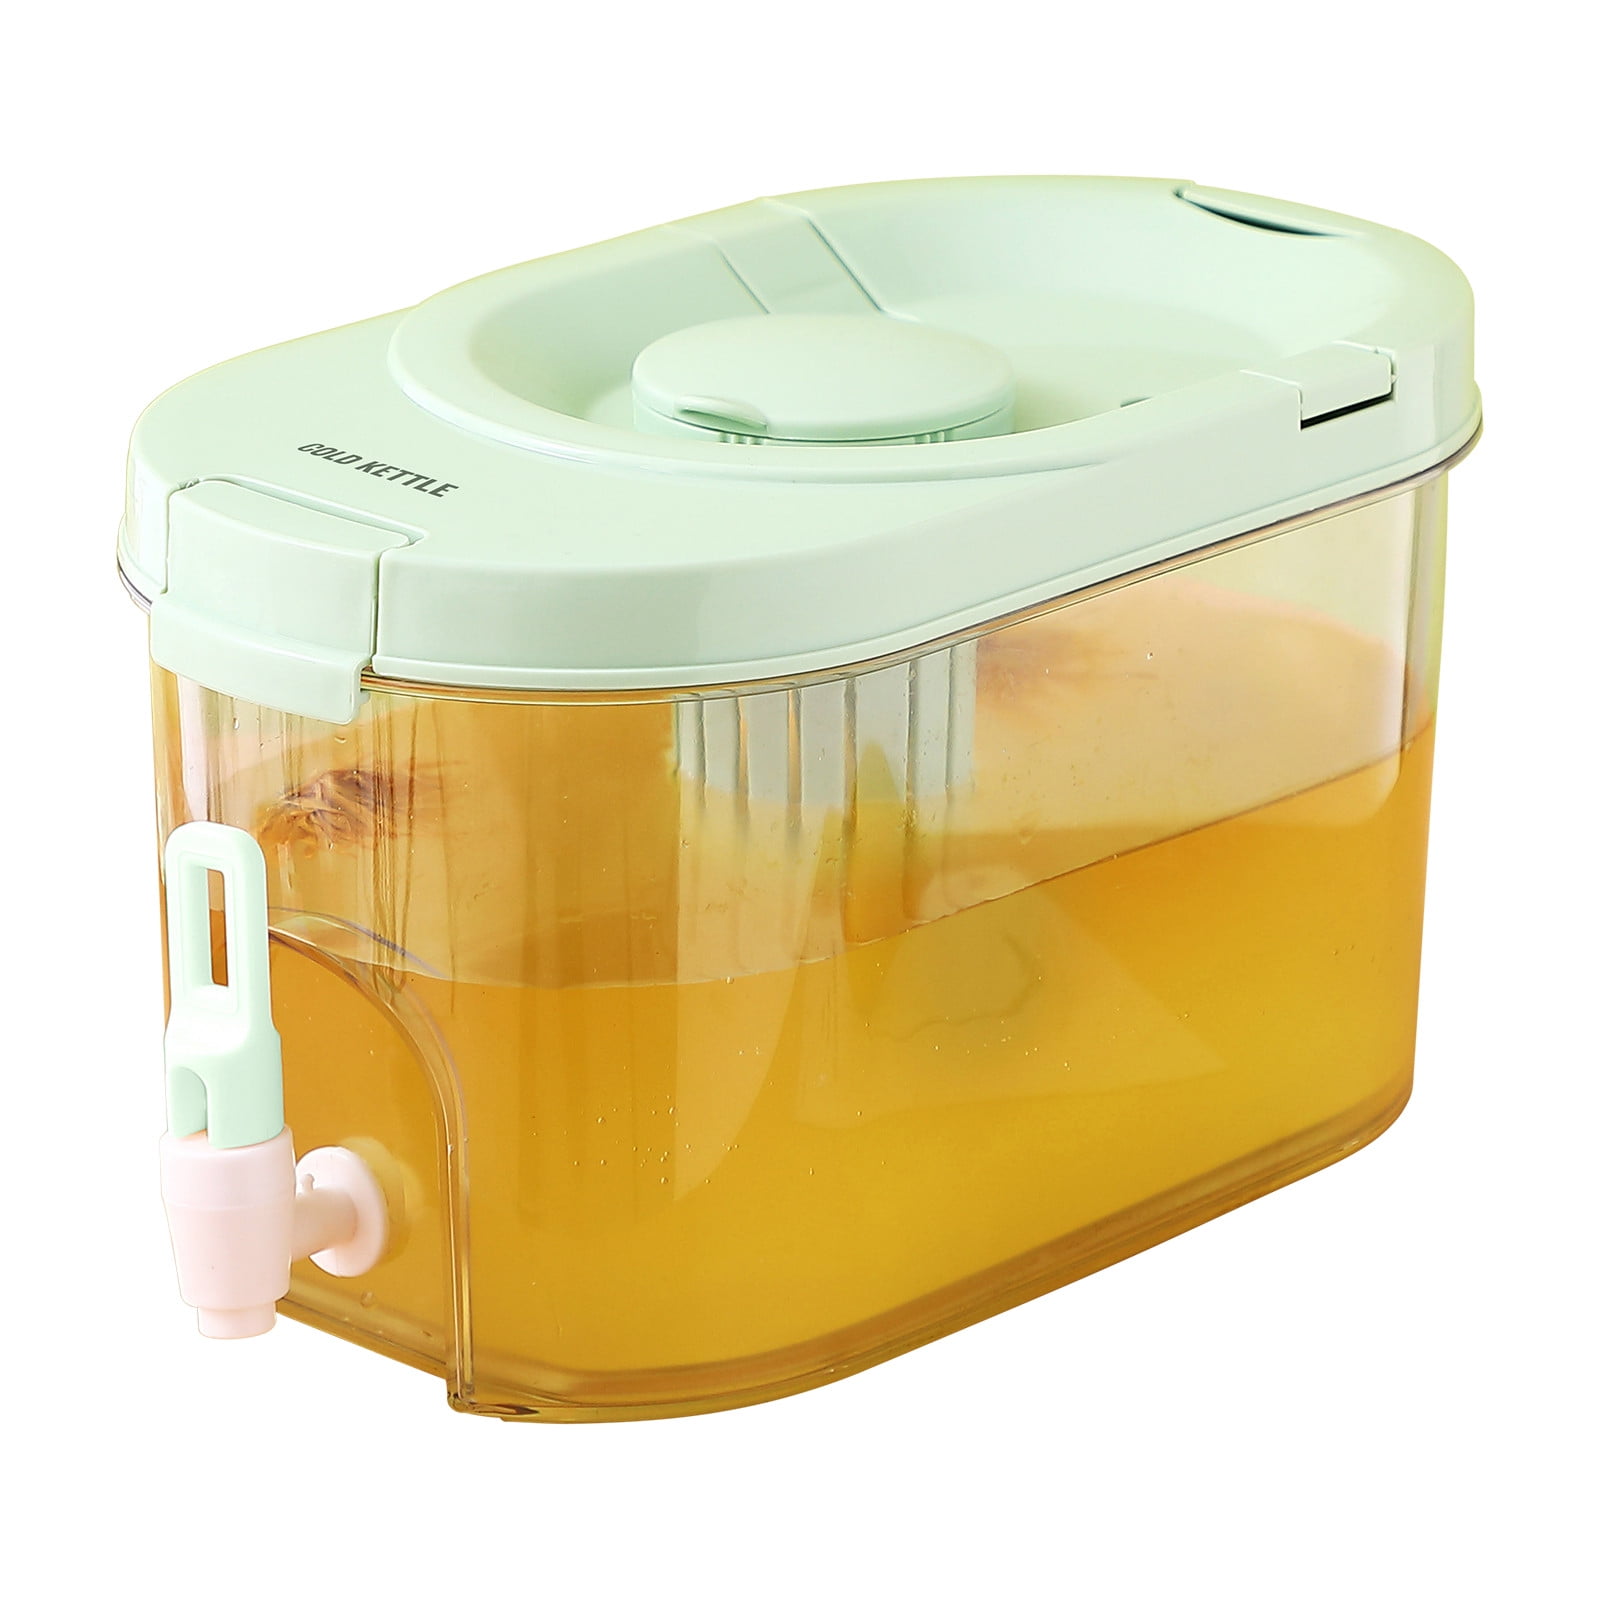 Lemonade dispenser 4 liter - Sustainable lifestyle